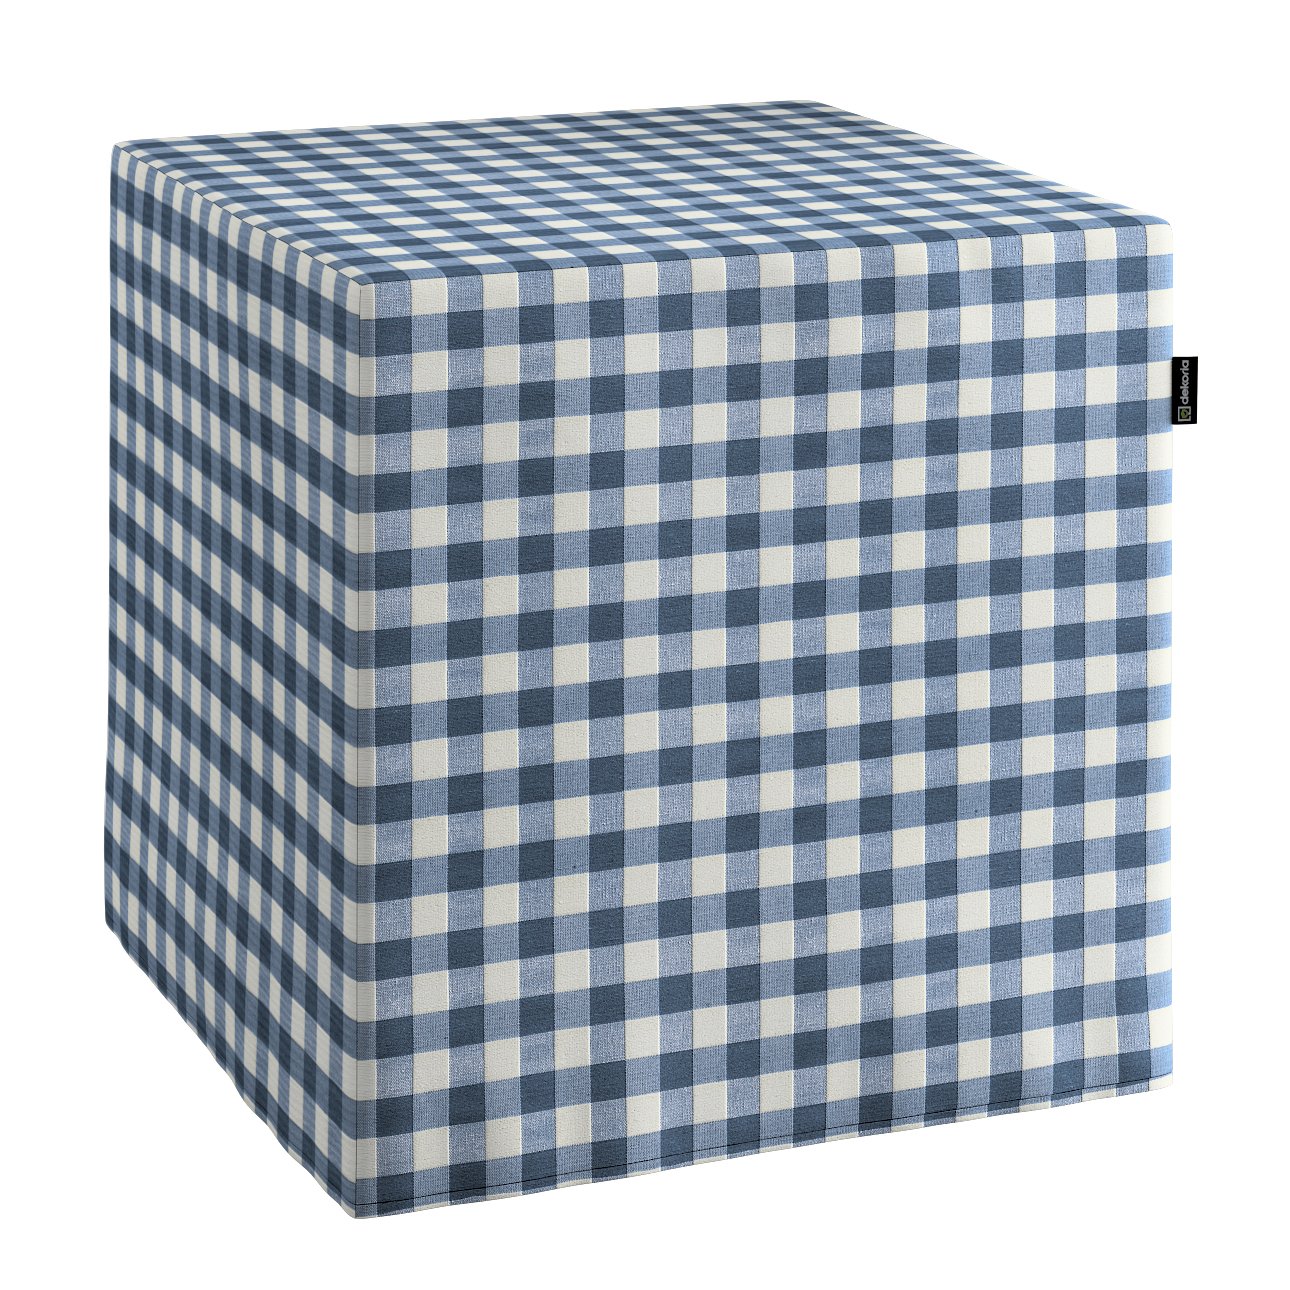 Dekoria Sedák Cube - kostka pevná 40x40x40, tmavě modrá - bílá střední kostka, 40 x 40 x 40 cm, Quadro, 136-01